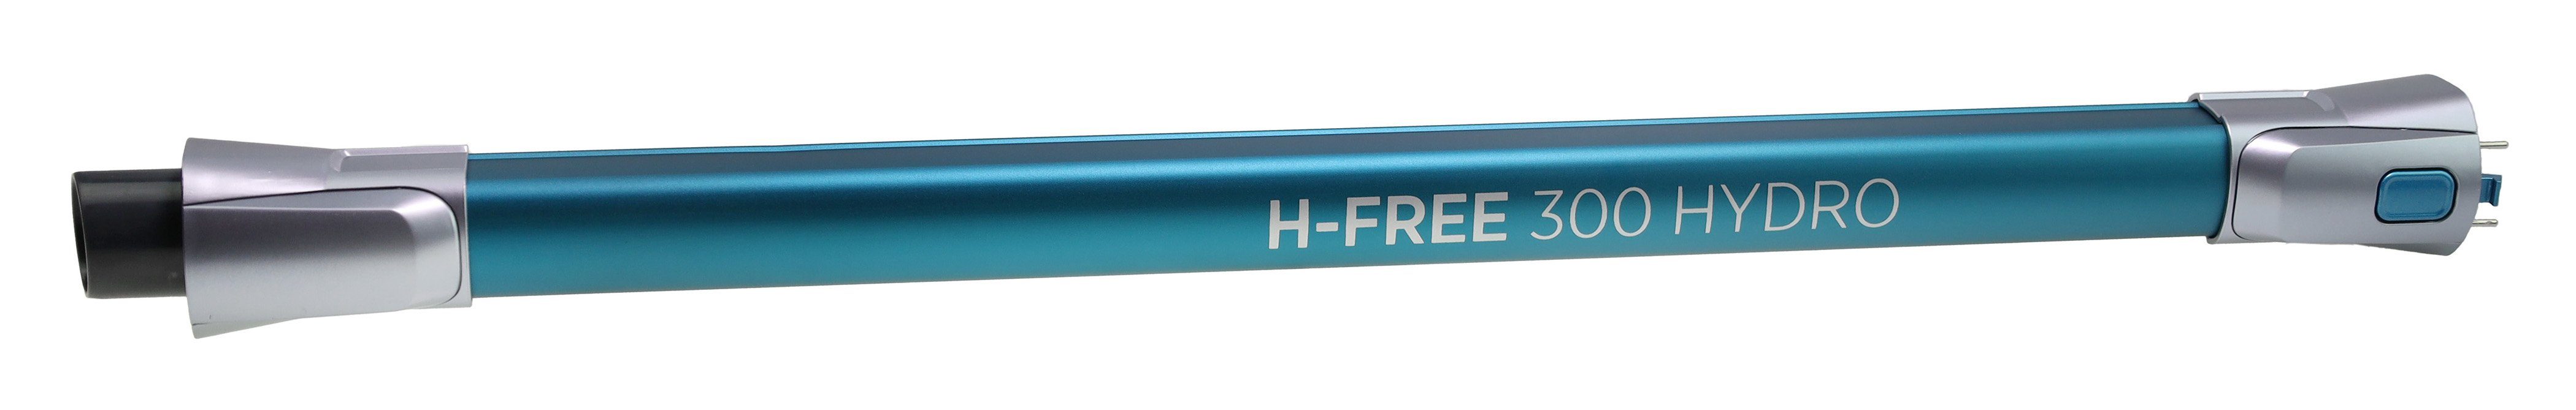 Hoover Saugrohr Akku-Handstaubs Staubsaugerrohr H-FREE Hoover 300 für Hydro 48033260 HF322YHM